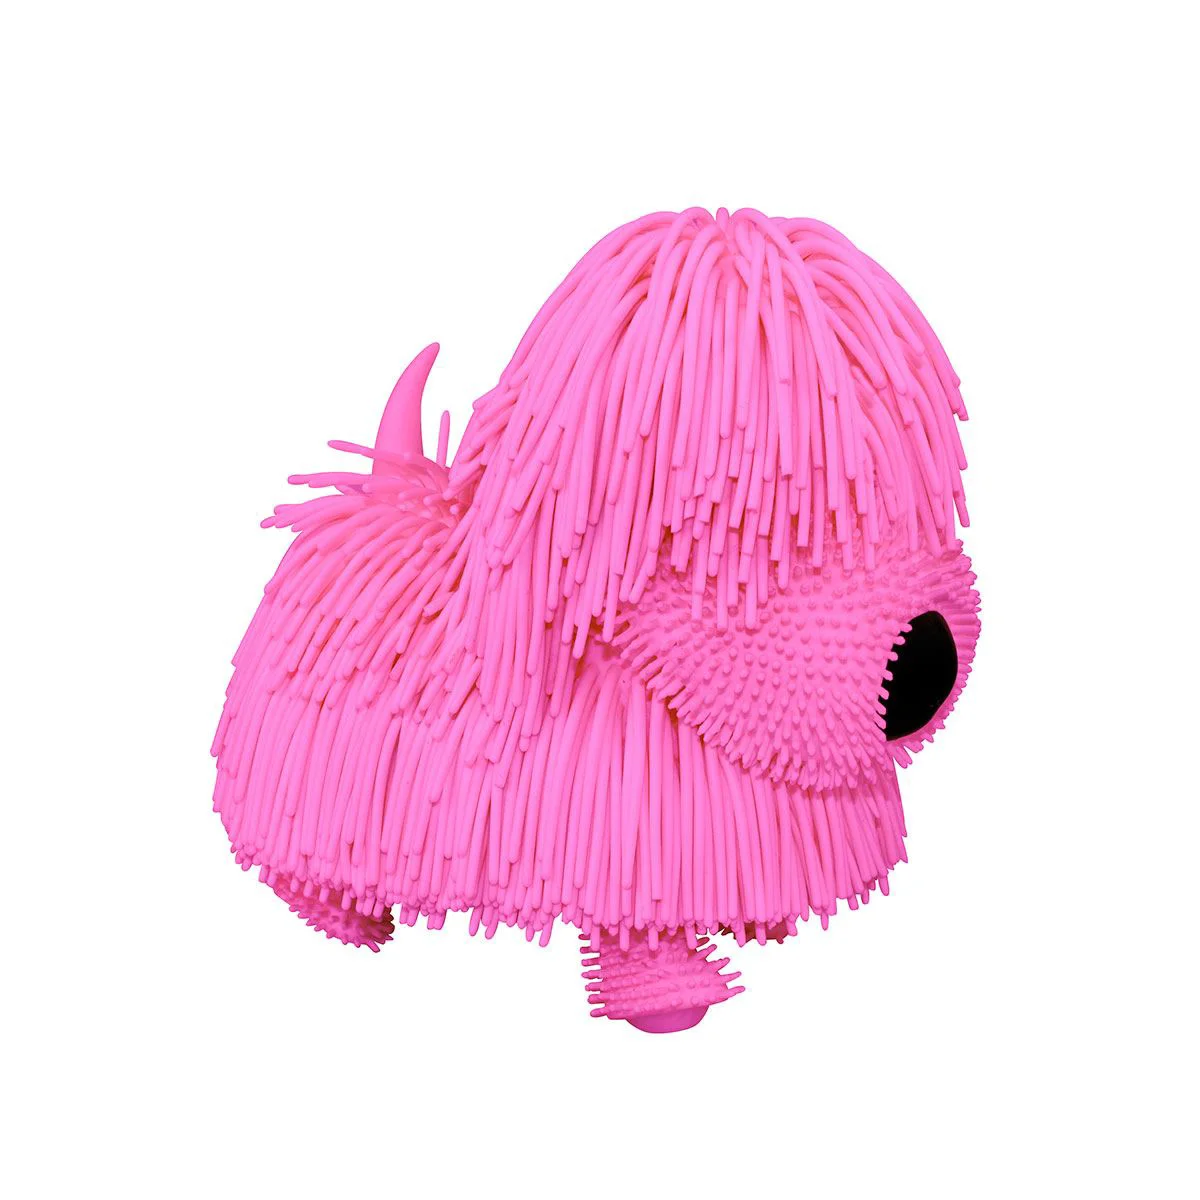 Интерактивная музыкальная игрушка Jiggly Pup Розовый щенок